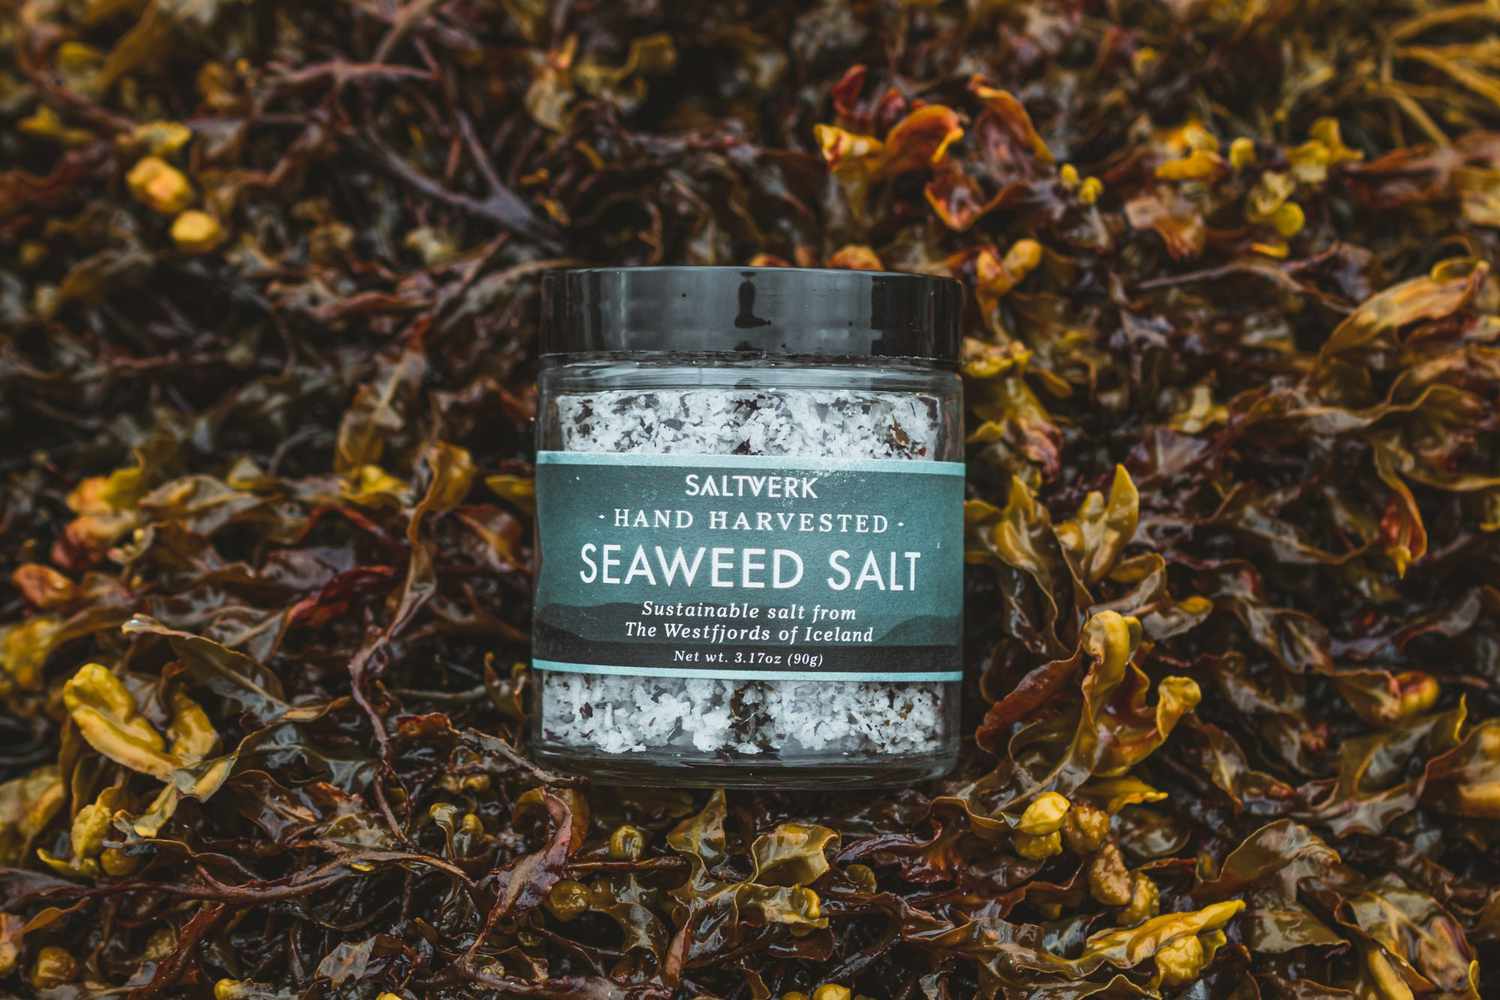 Saltverk手工采摘的海藻海盐富含鲜味，是该公司总部所在地冰岛海岸沿线多种海藻的混合物。它能使任何一道菜立刻变得有深度。此外，该公司对环境的碳足迹为零，没有二氧化碳和甲烷排放，因此这是一份对地球和你的受赠者的口味一样好的礼物。现在购买：Saltverk手工收获的冰岛海盐，12.99美元，亚马逊网站。